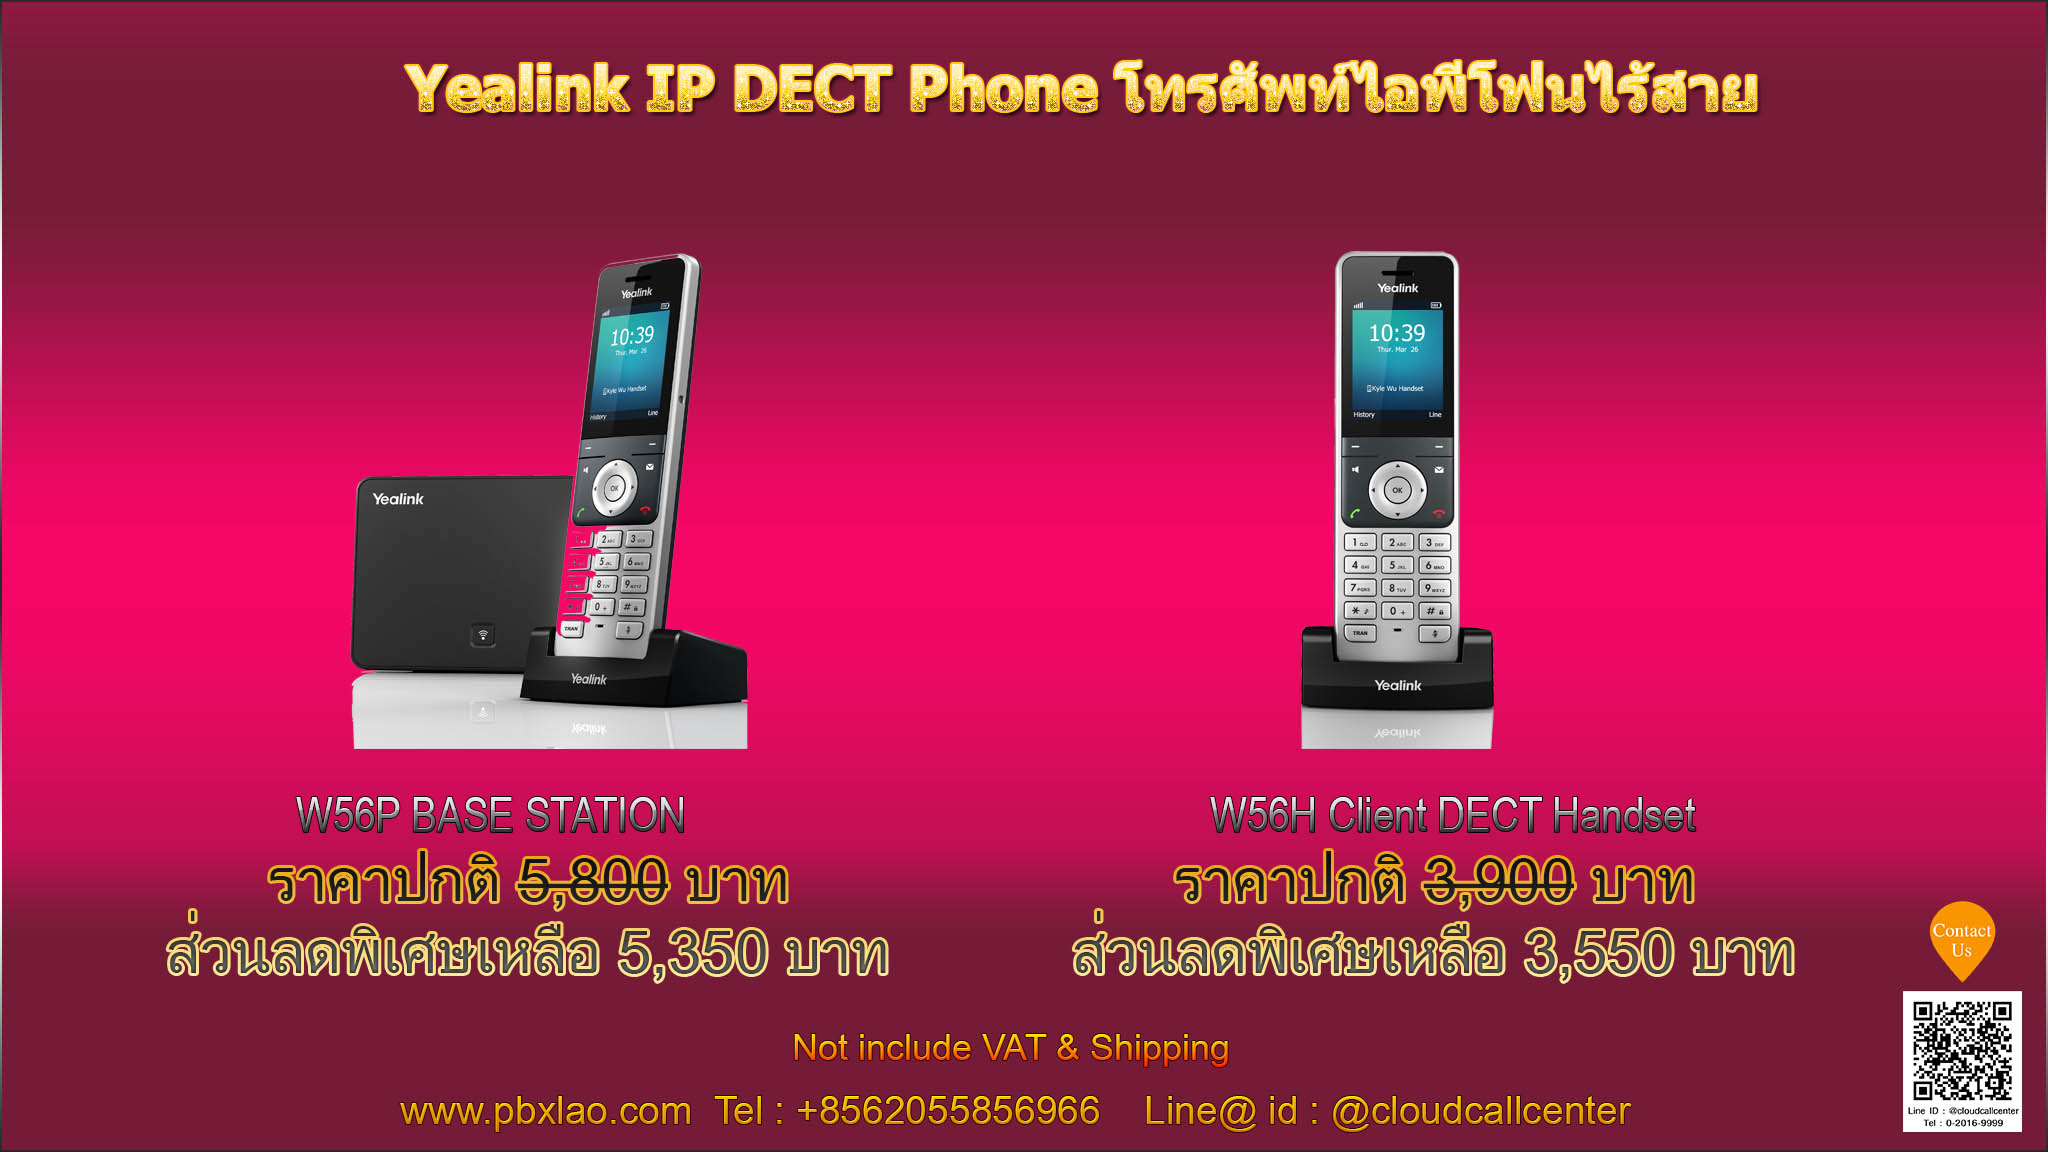 Yealink DectPhone